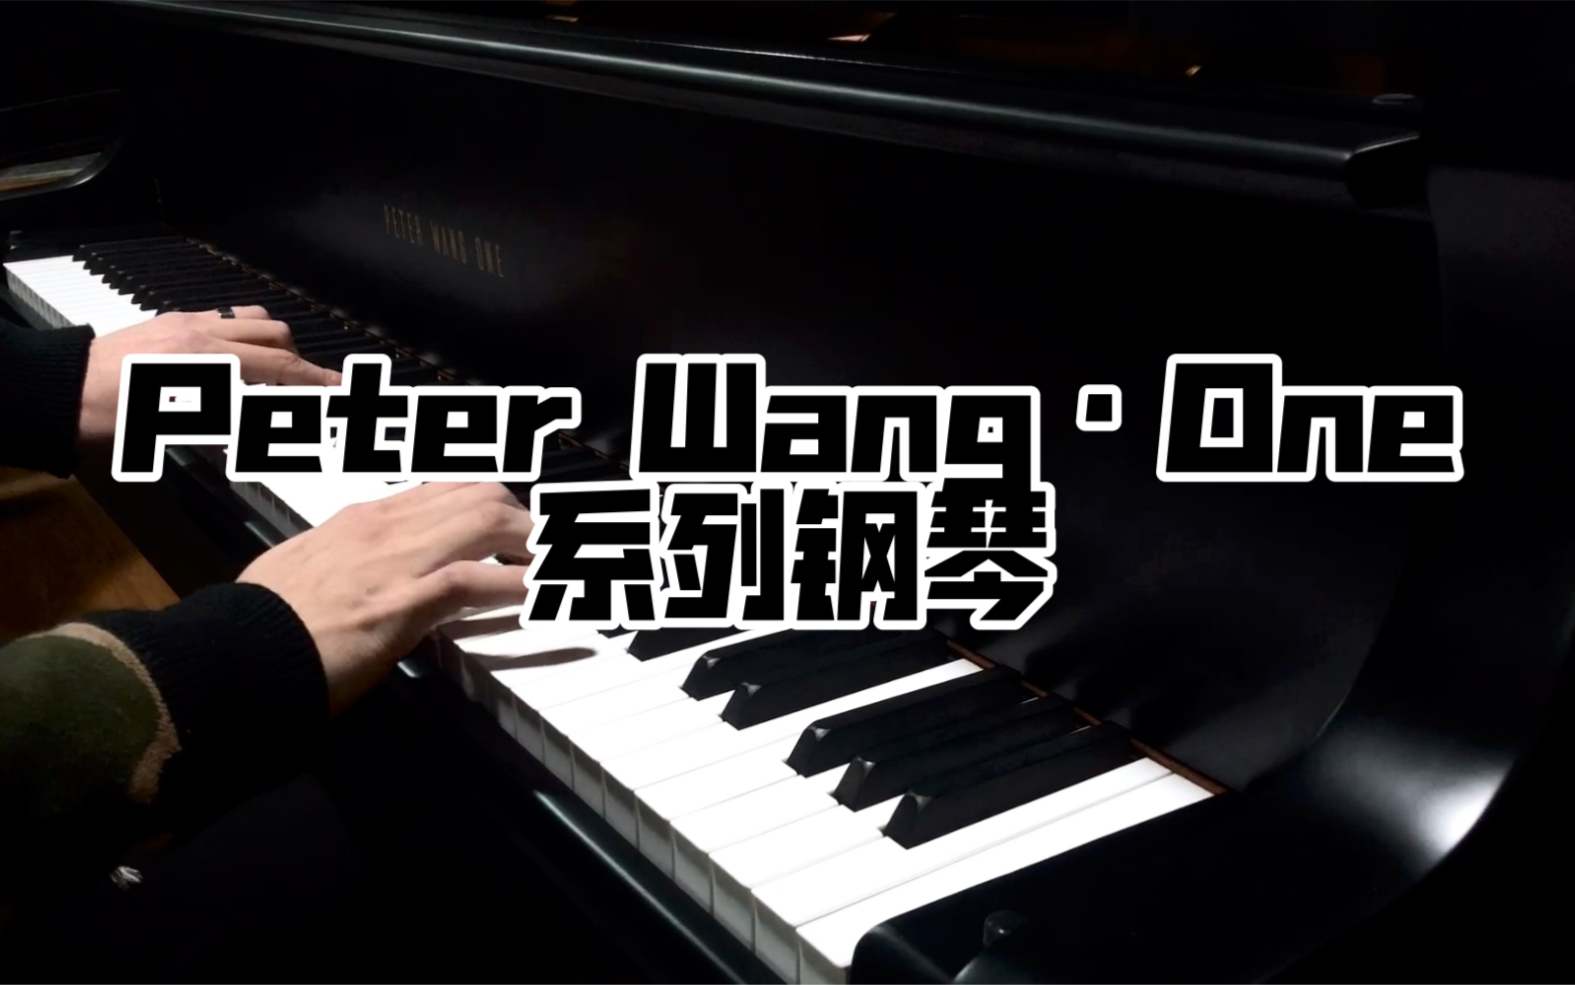 peter wang one 钢琴图片